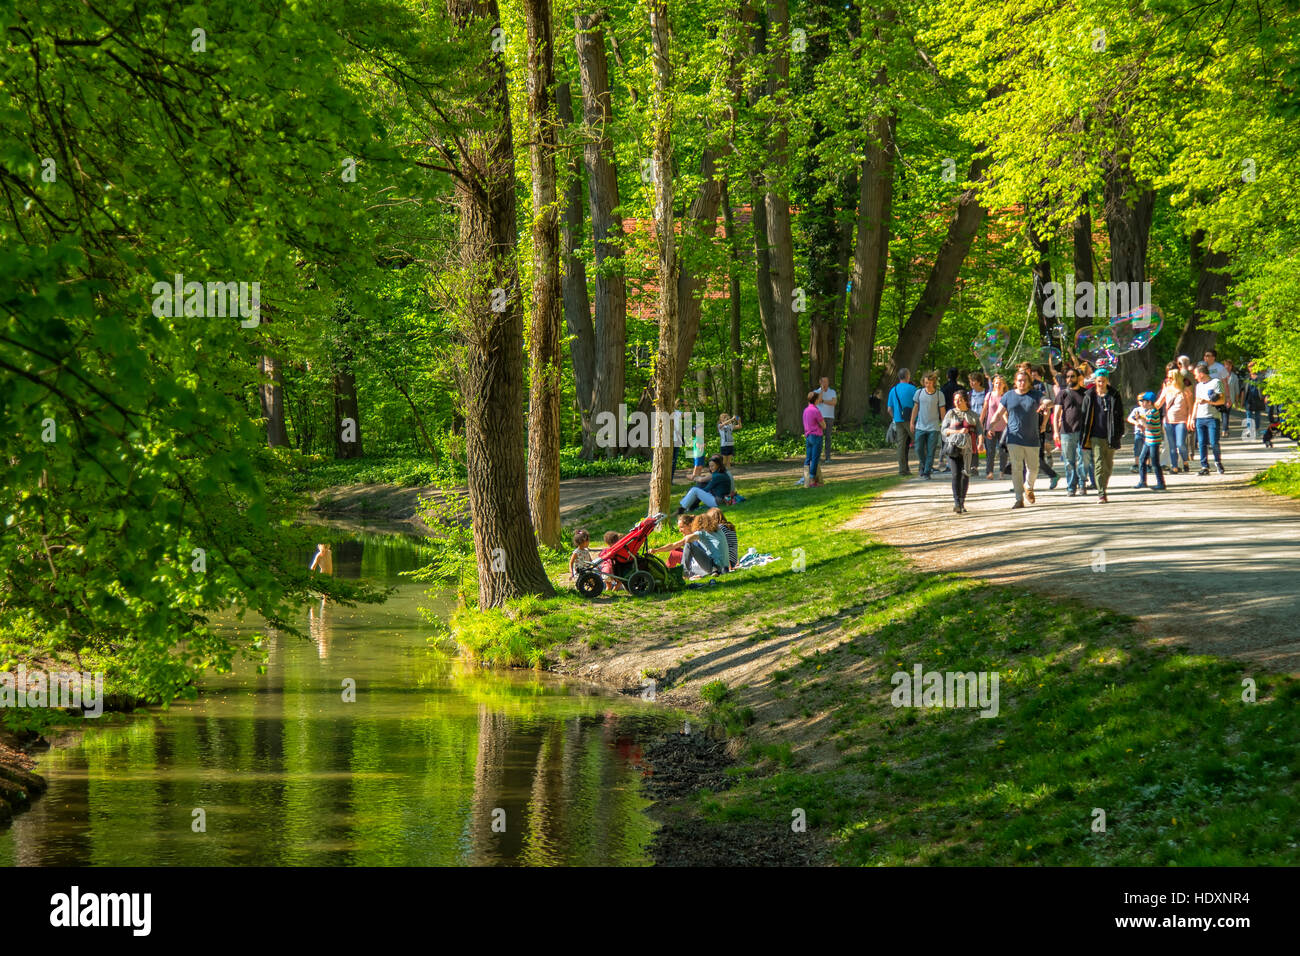 Englischer Garten park in Munich Stock Photo